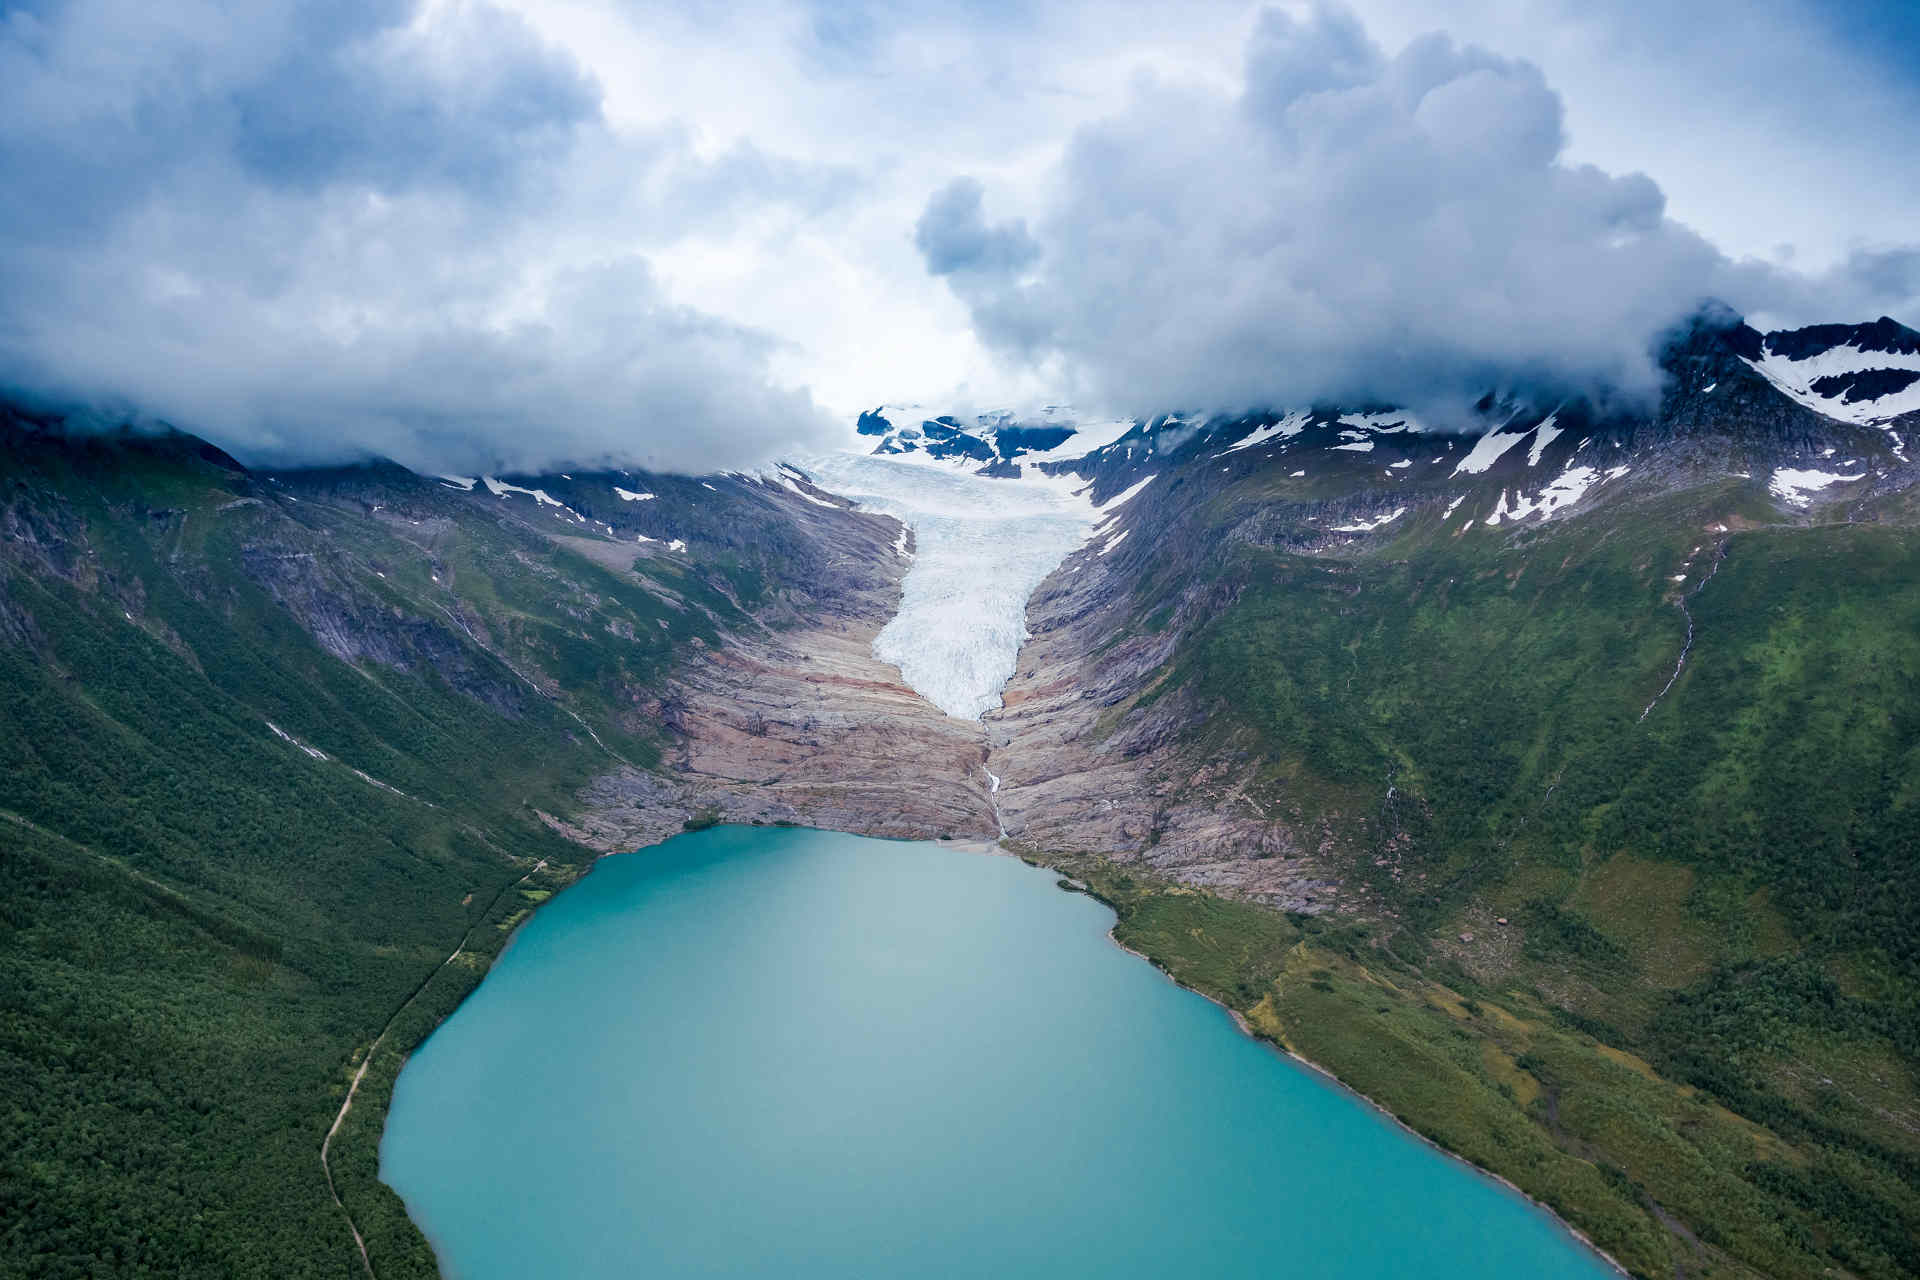 Gletscherrückgang: Der Rückzug der Alpengletscher wird möglicherweise bis zum Ende dieses Jahrhunderts neue Ökosysteme schaffen